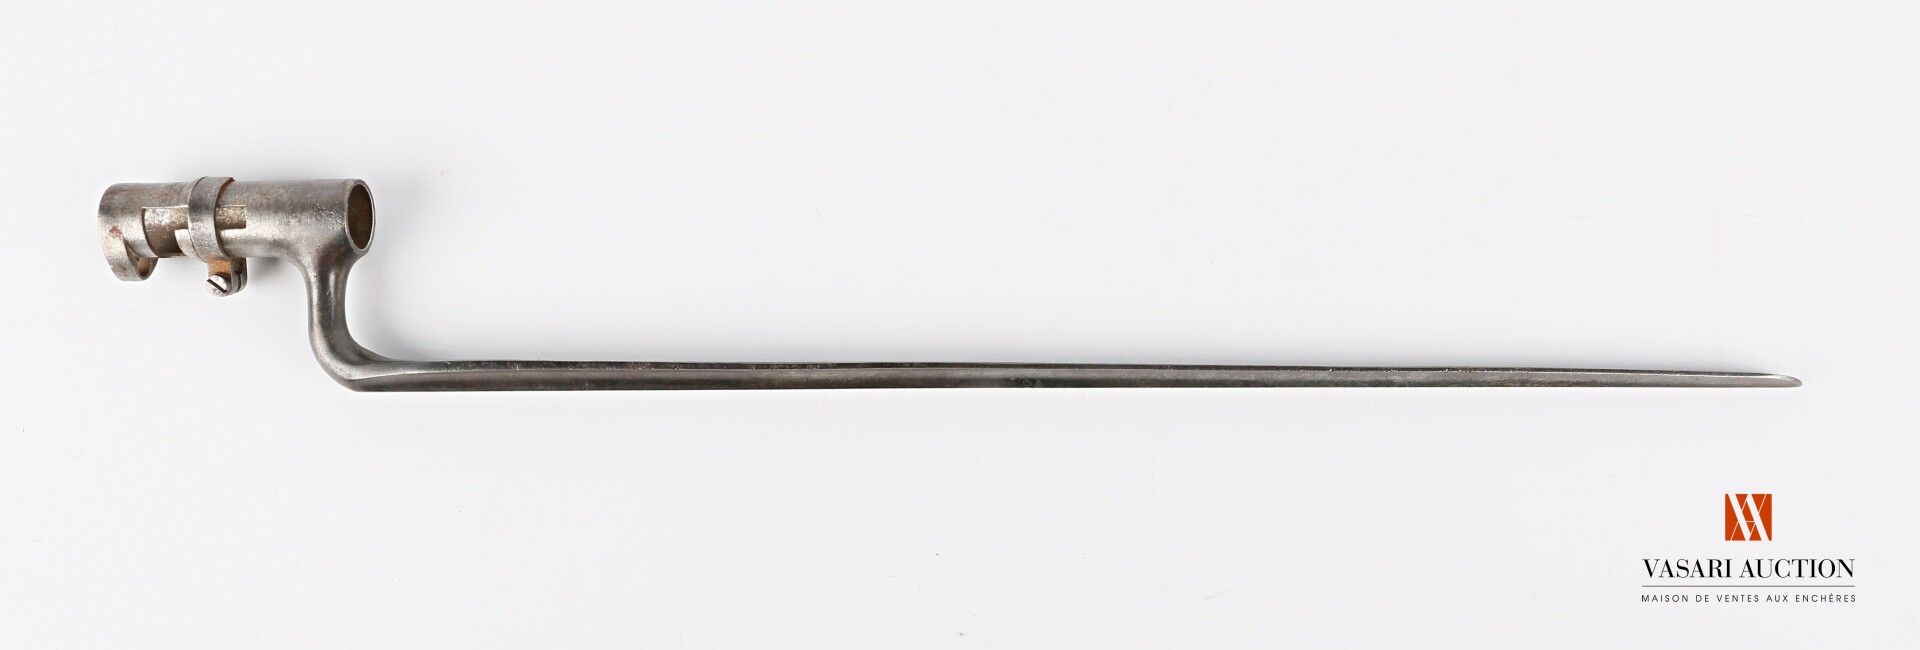 Null 插座刺刀，刀身470毫米，刀托上标有 "US "字样，插座71毫米，20毫米，磨损，氧化，SF，LT532毫米，美国19世纪中期